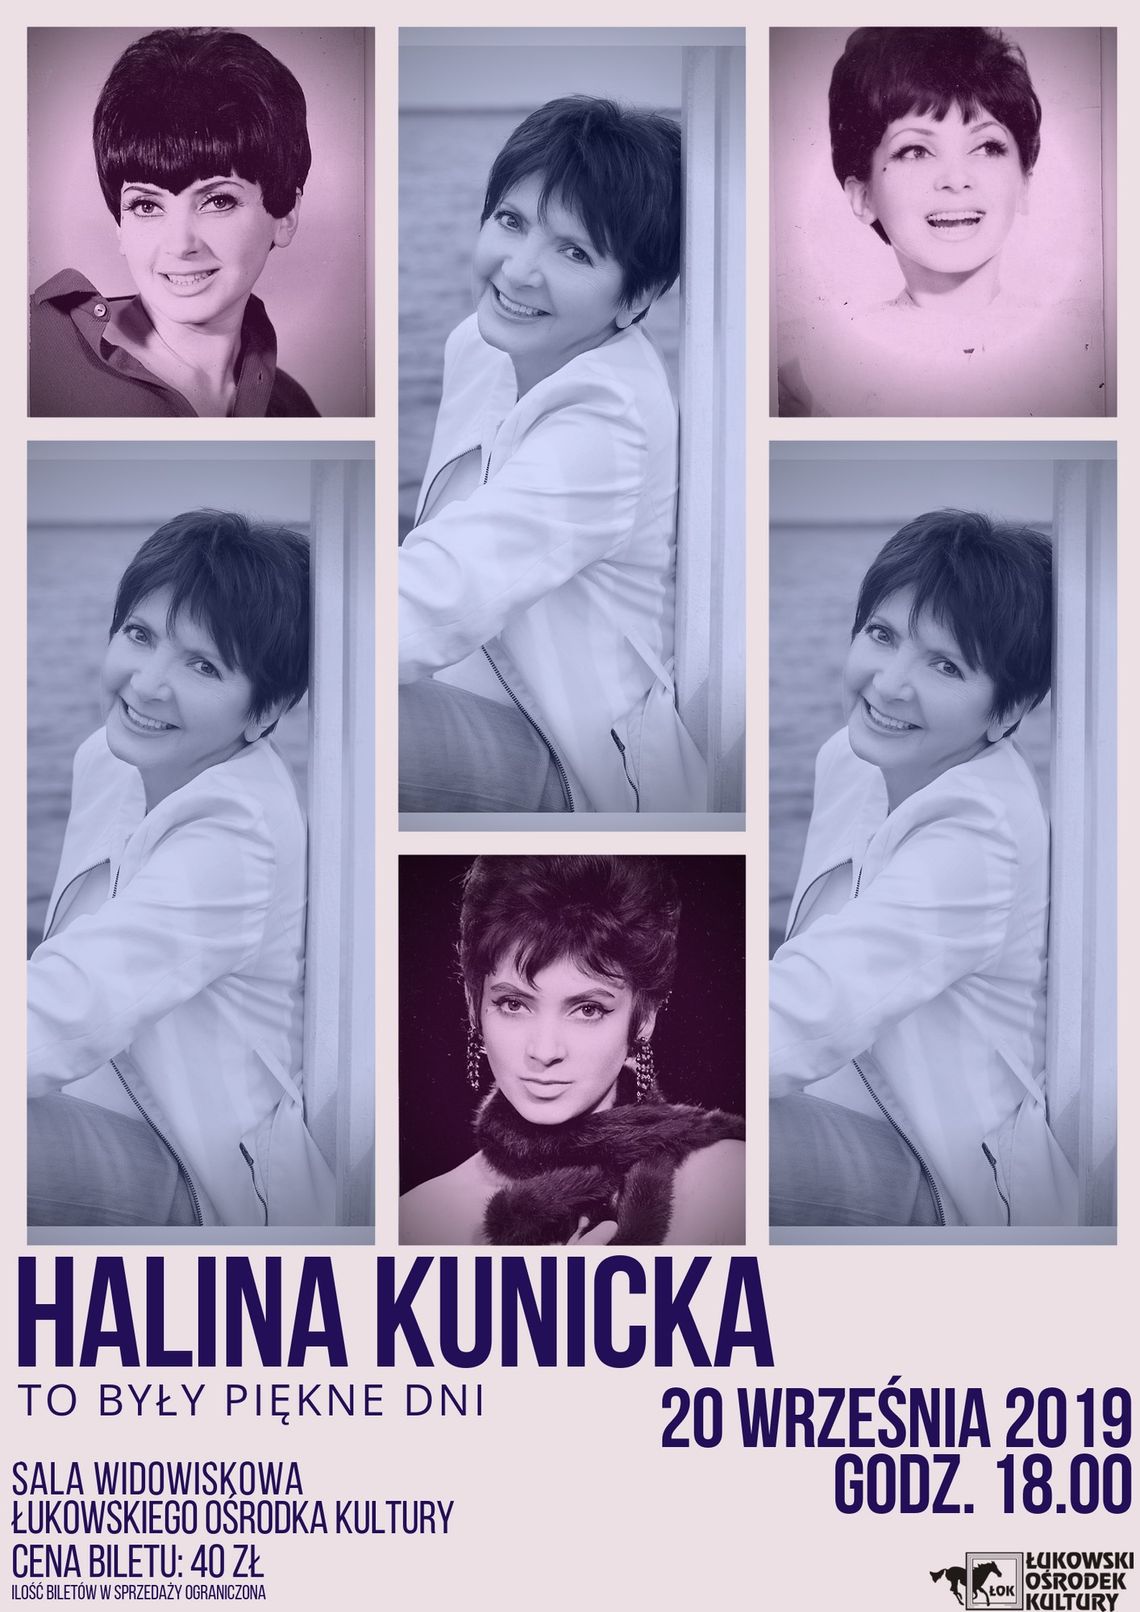 Koncert Haliny Kunickiej "To były piękne dni" /20 września 2019